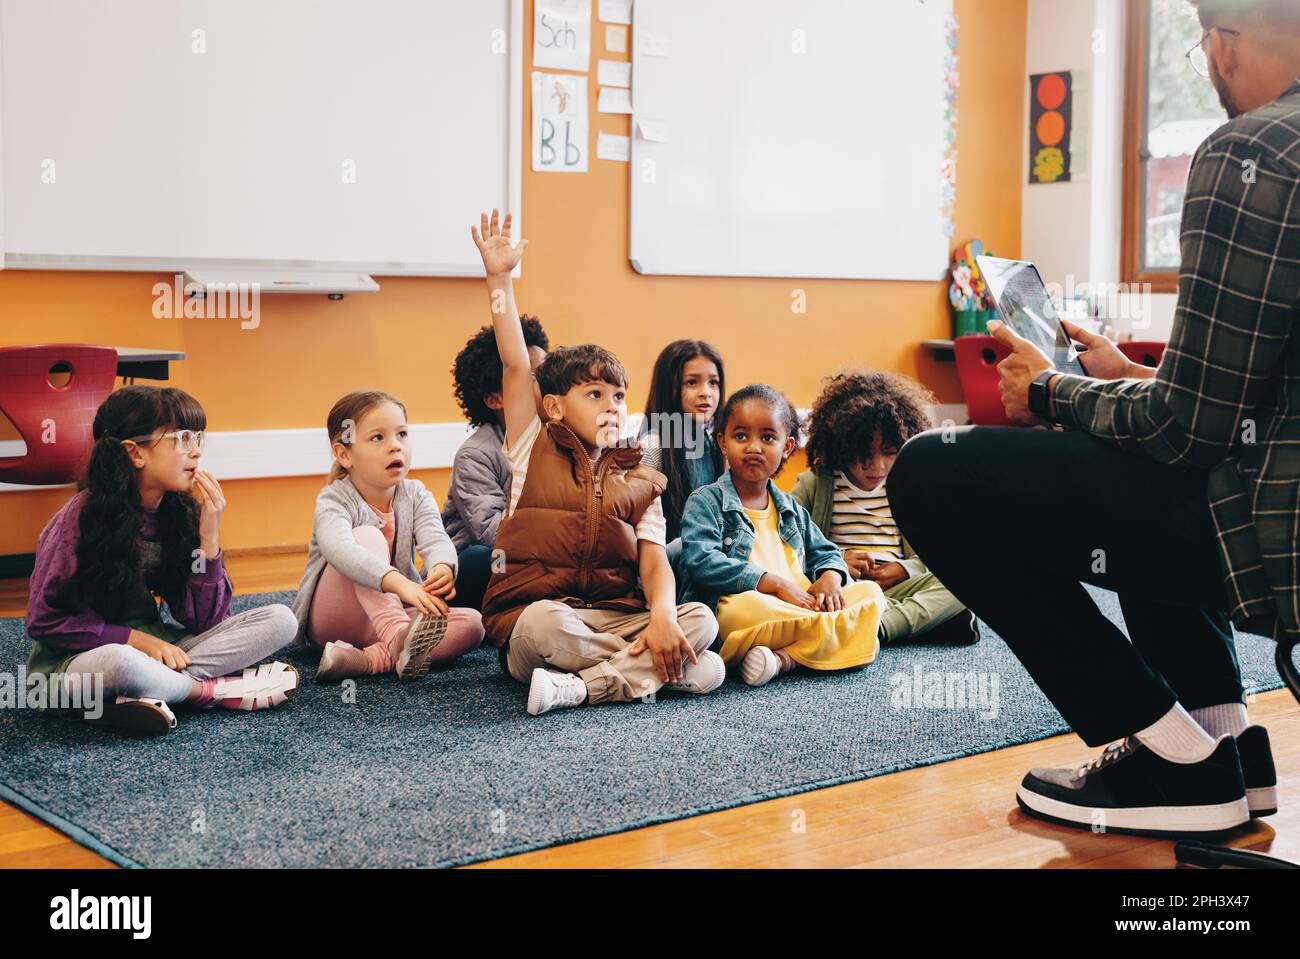 Der Junge hebt die Hand, um eine Frage in einem Klassenzimmer zu beantworten; er sitzt mit anderen Kindern auf dem Boden und der Lehrer sitzt vor der Klasse. Stockfoto